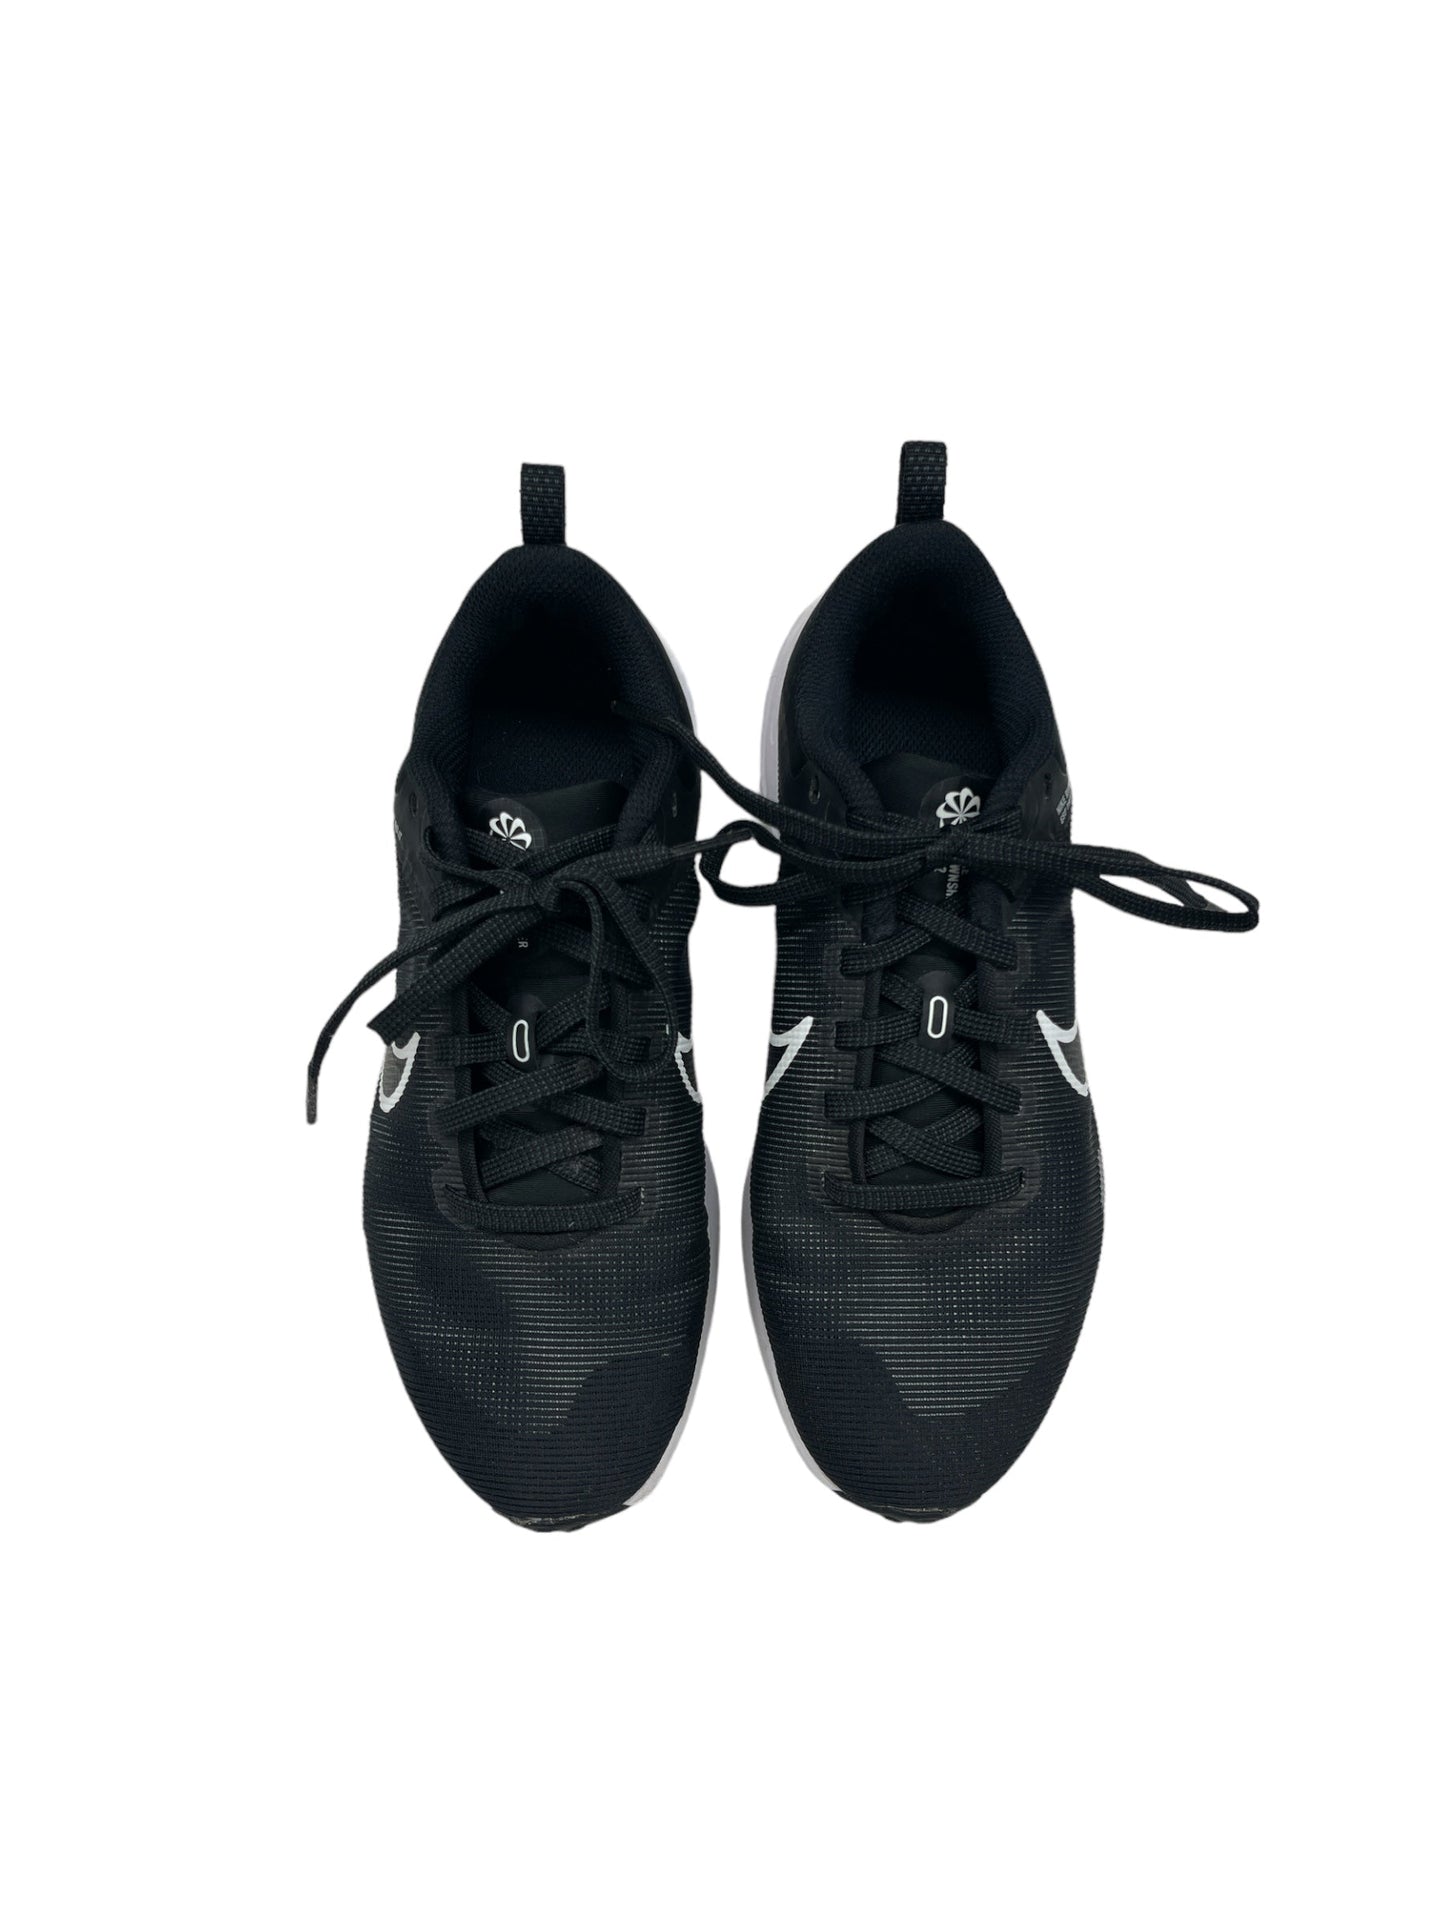 Black & White Shoes Athletic Nike, Size 5